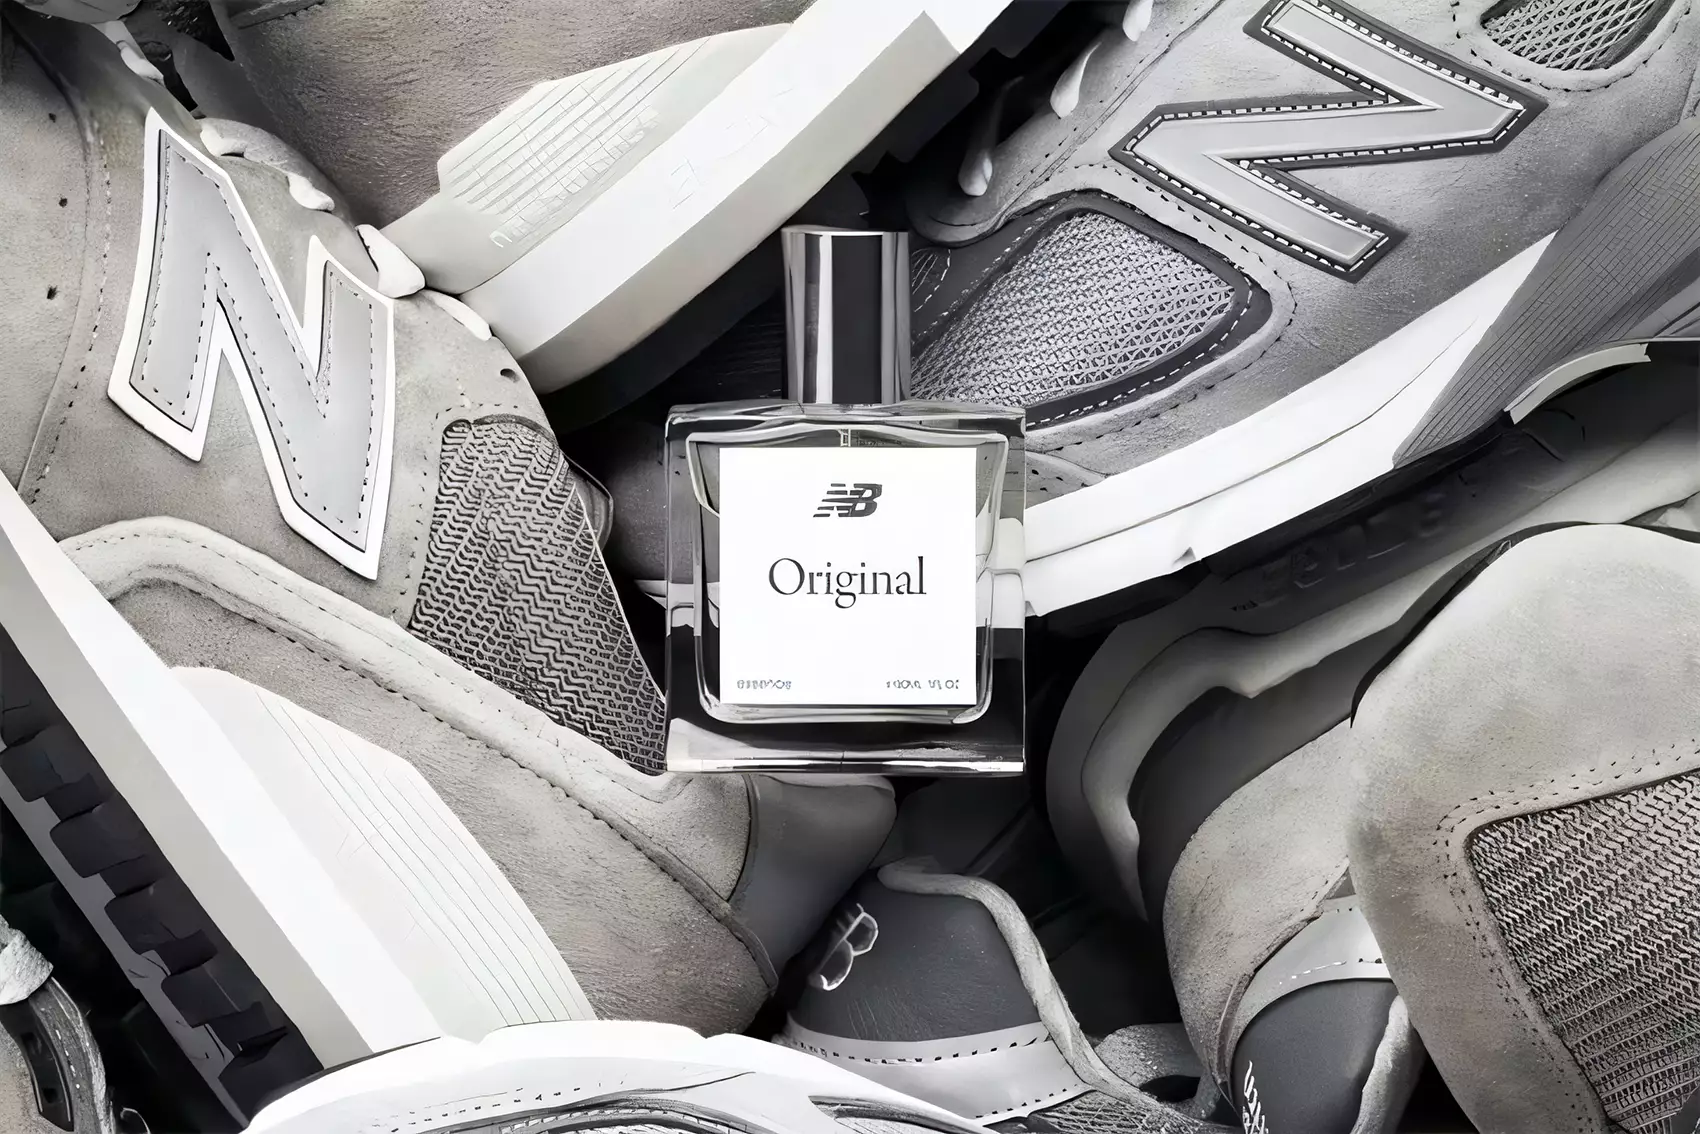 New Balance lève le voile (et le couvercle) sur son premier parfum inspiré des baskets